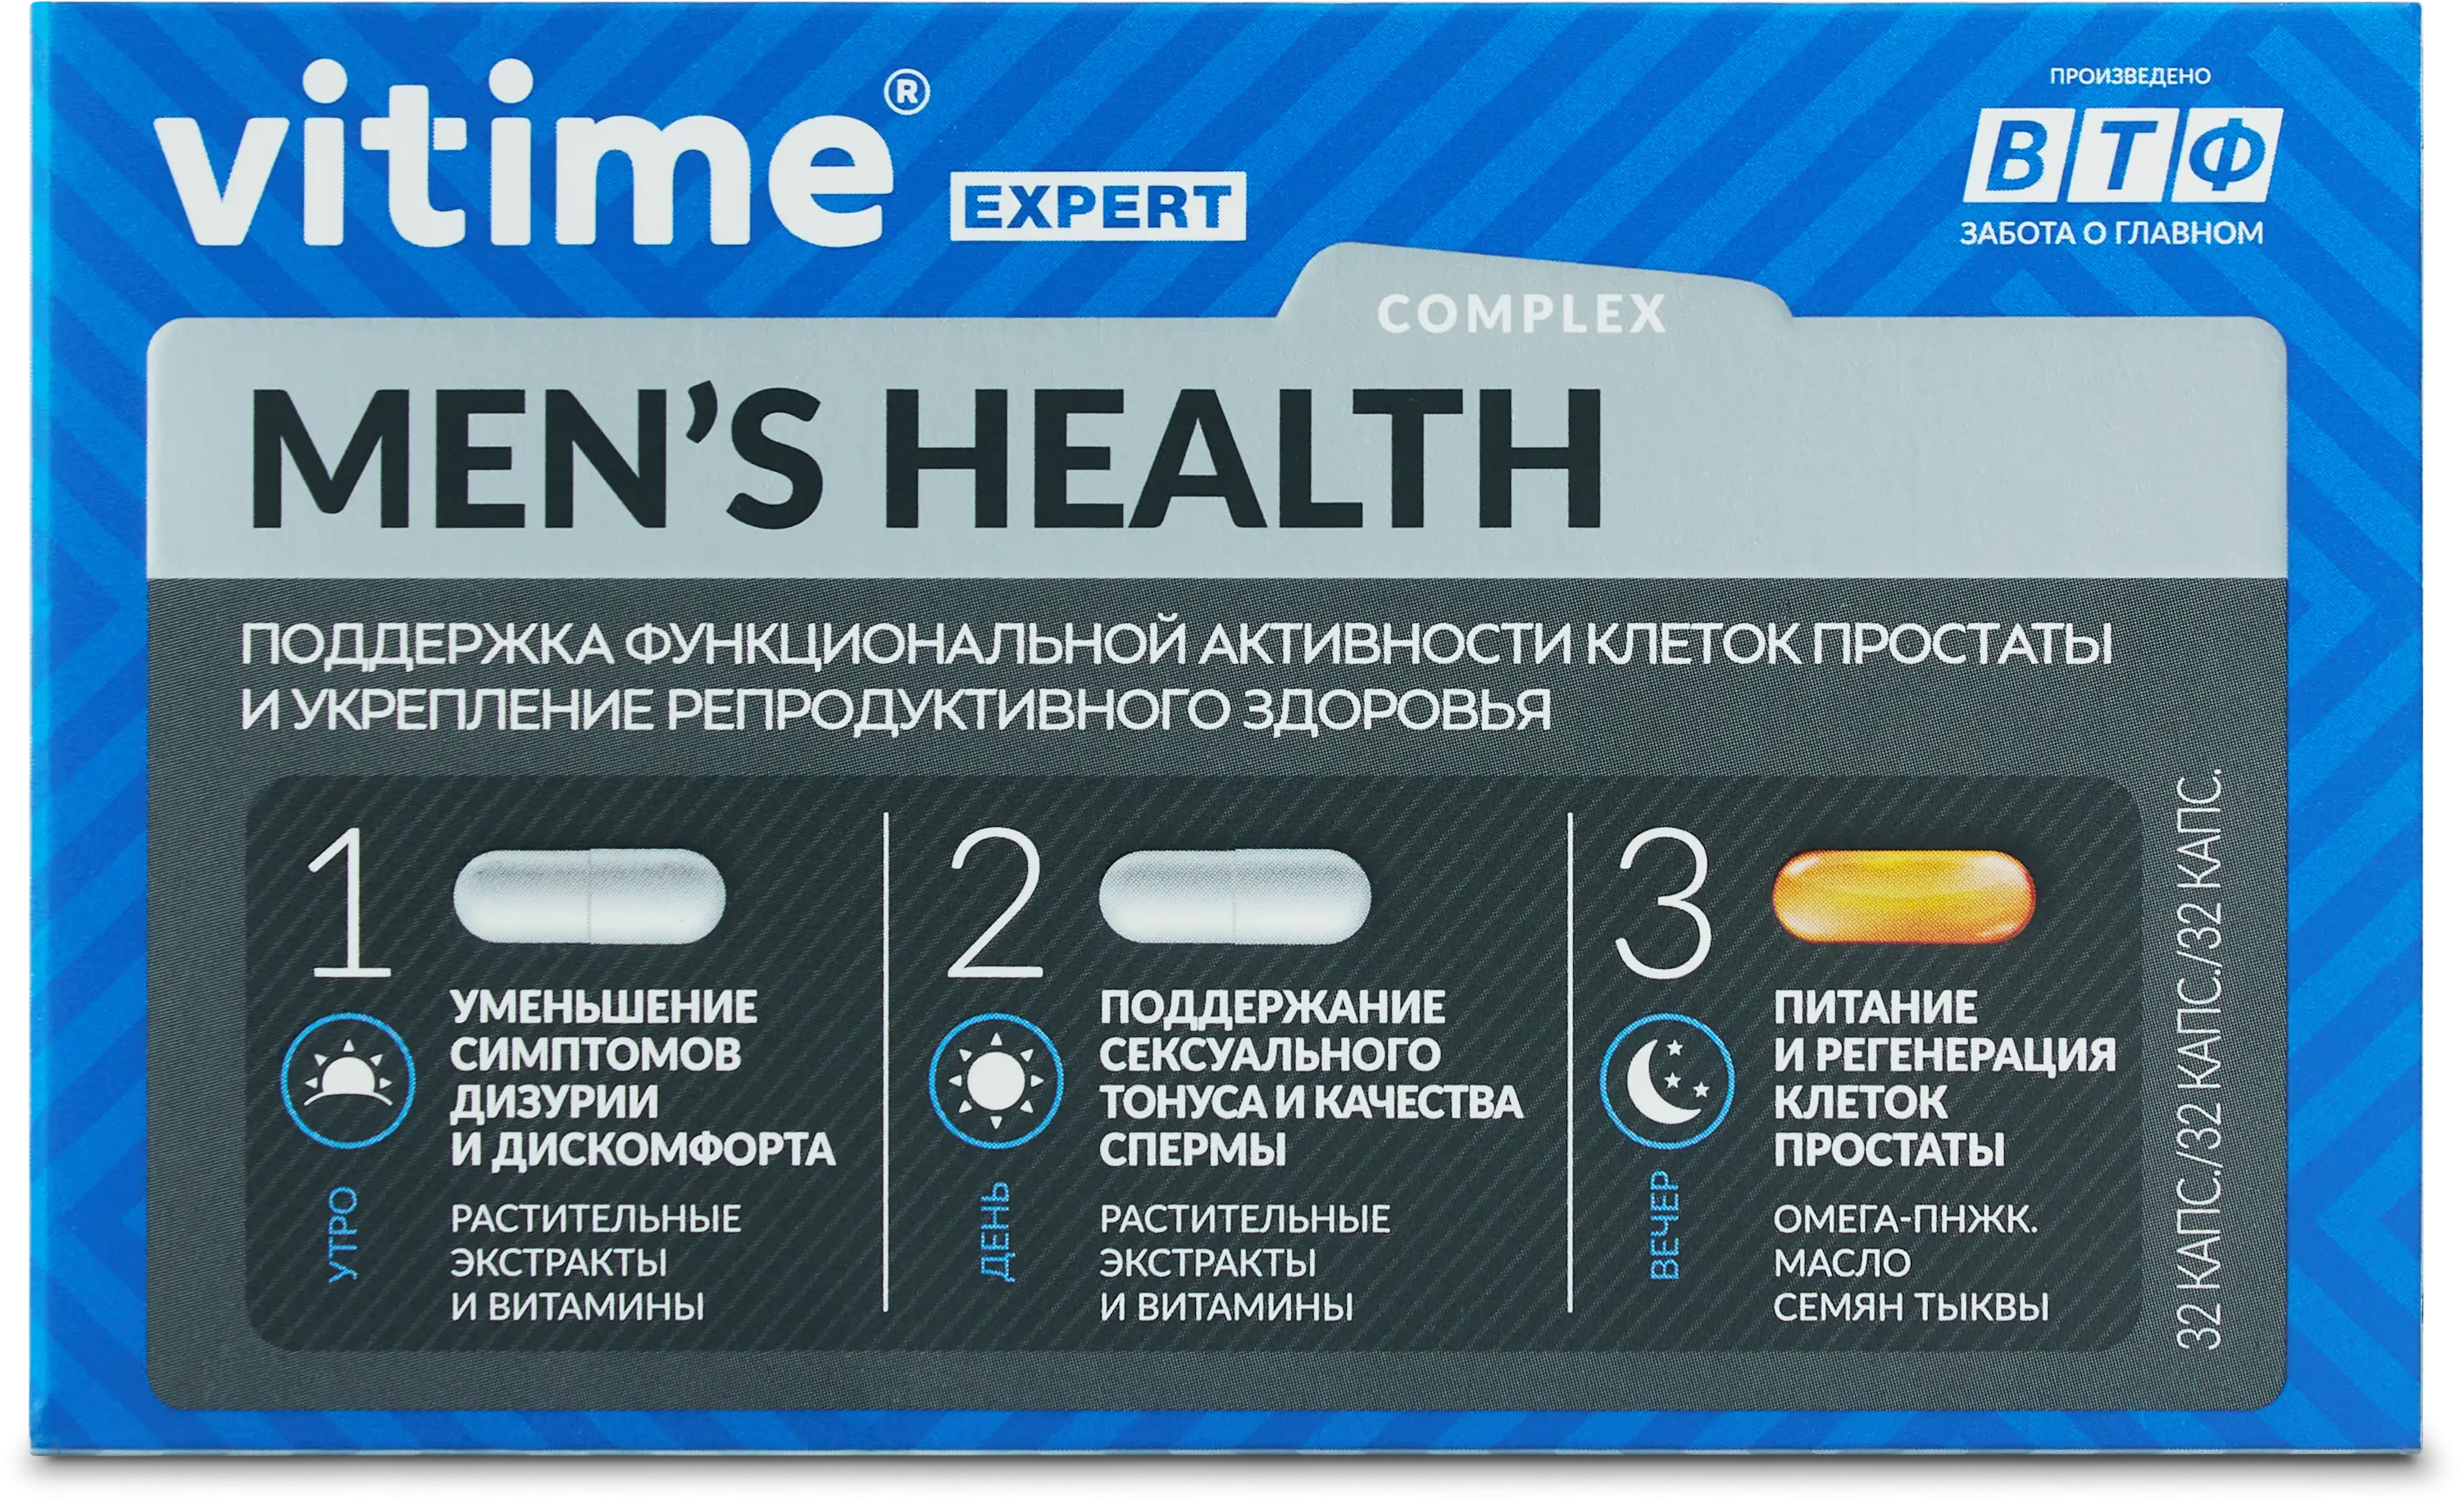 VITime® Expert Men’s Health